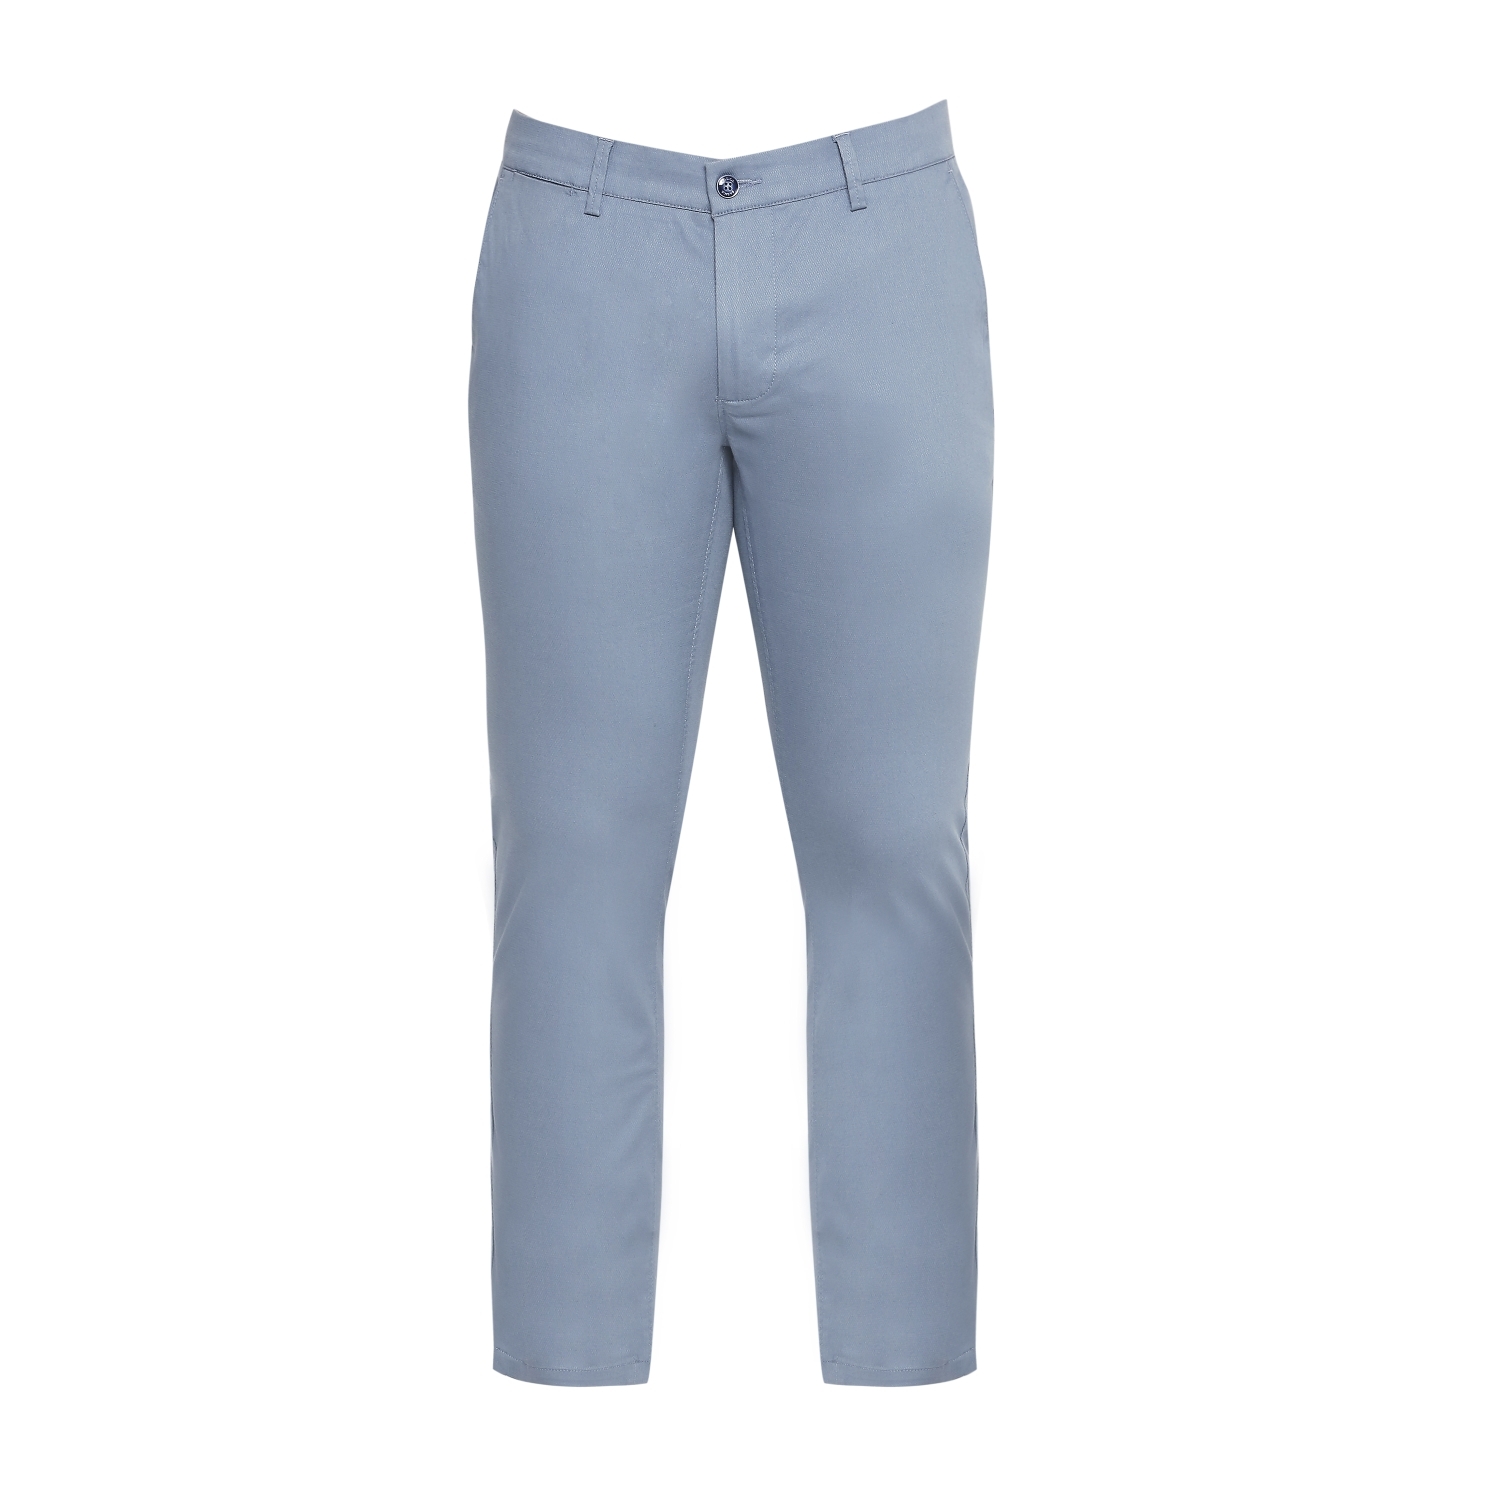 Basics | Men's Blue Cotton Blend Solid Trouser 5